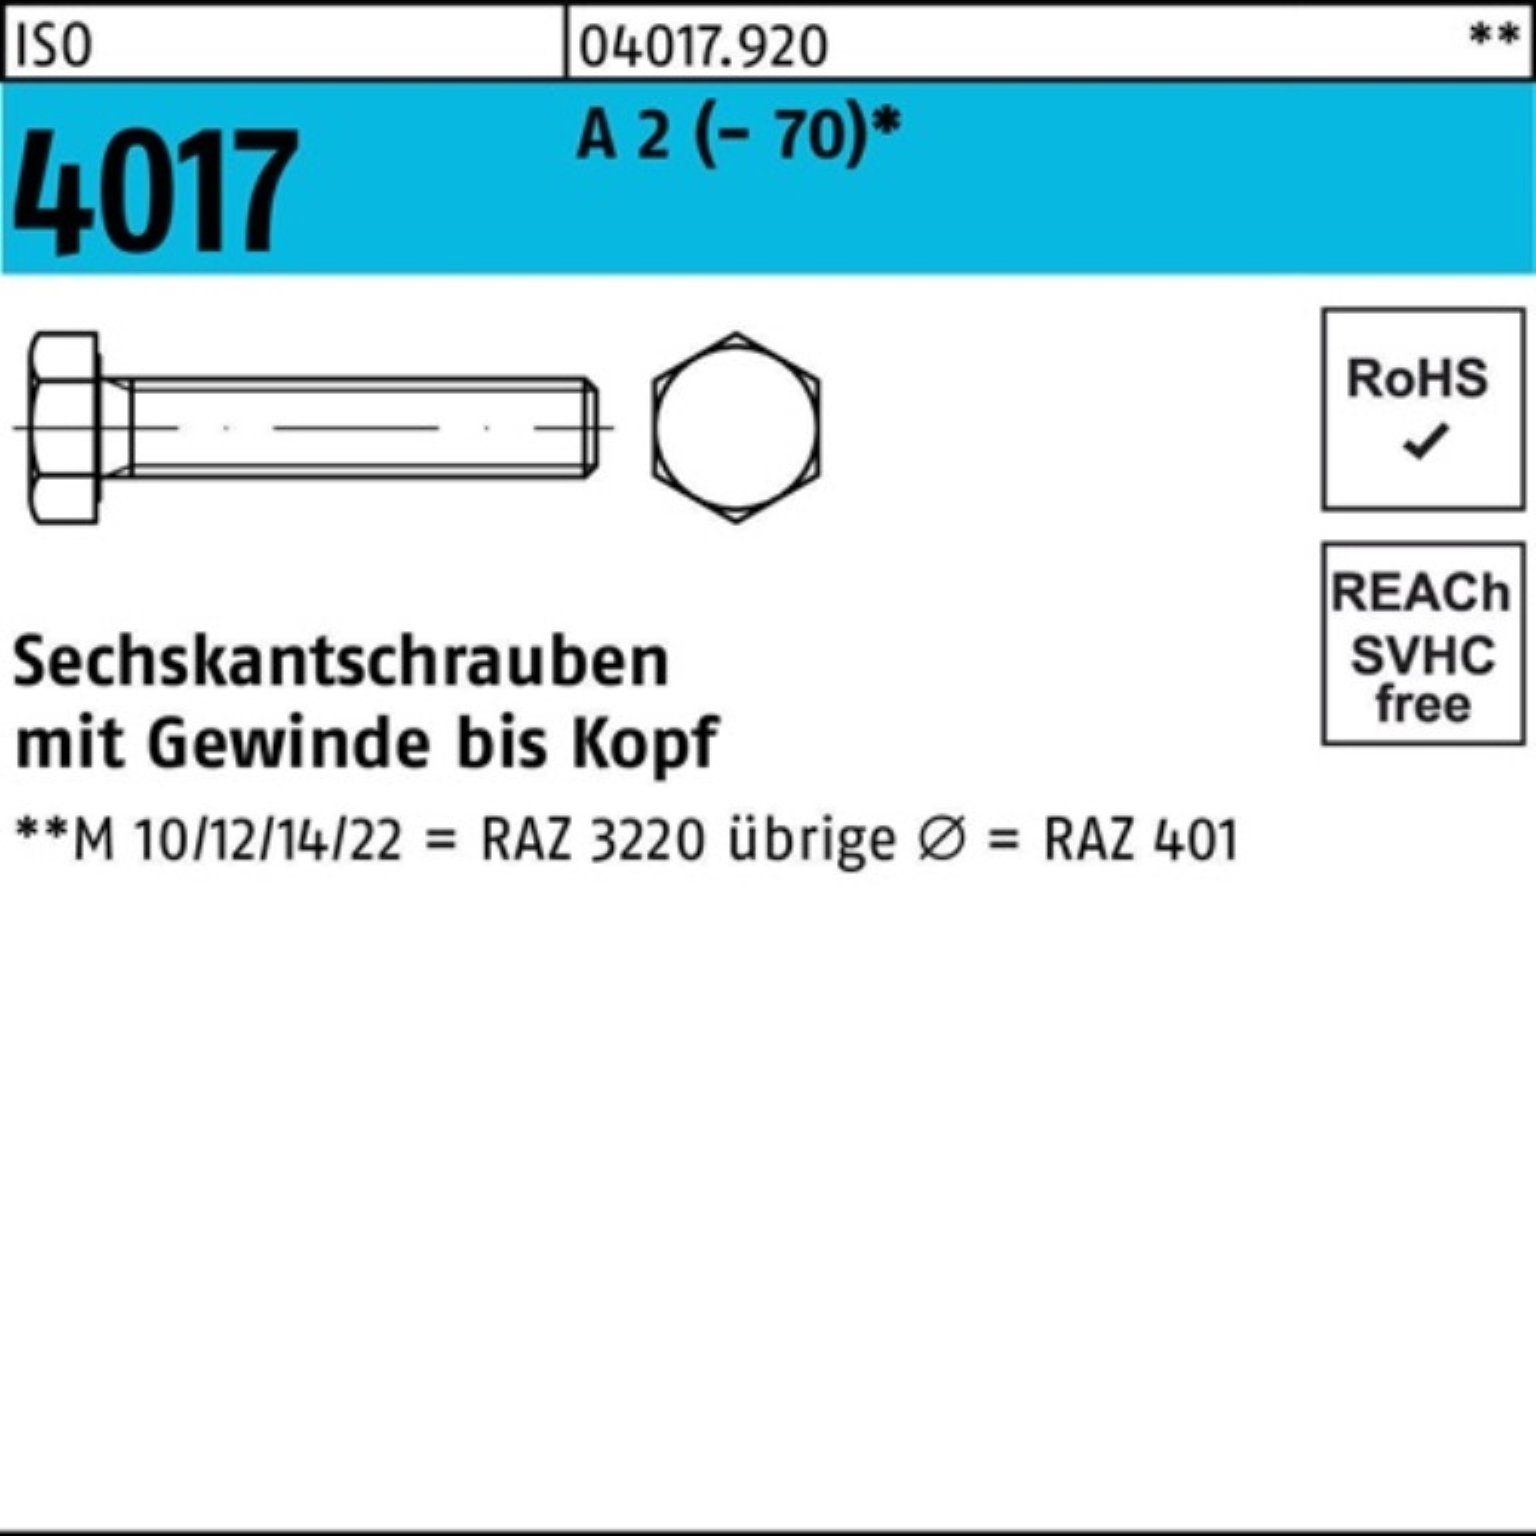 Bufab Sechskantschraube 100er Pack Sechskantschraube ISO 4017 VG M12x 130 A 2 (70) 1 Stück